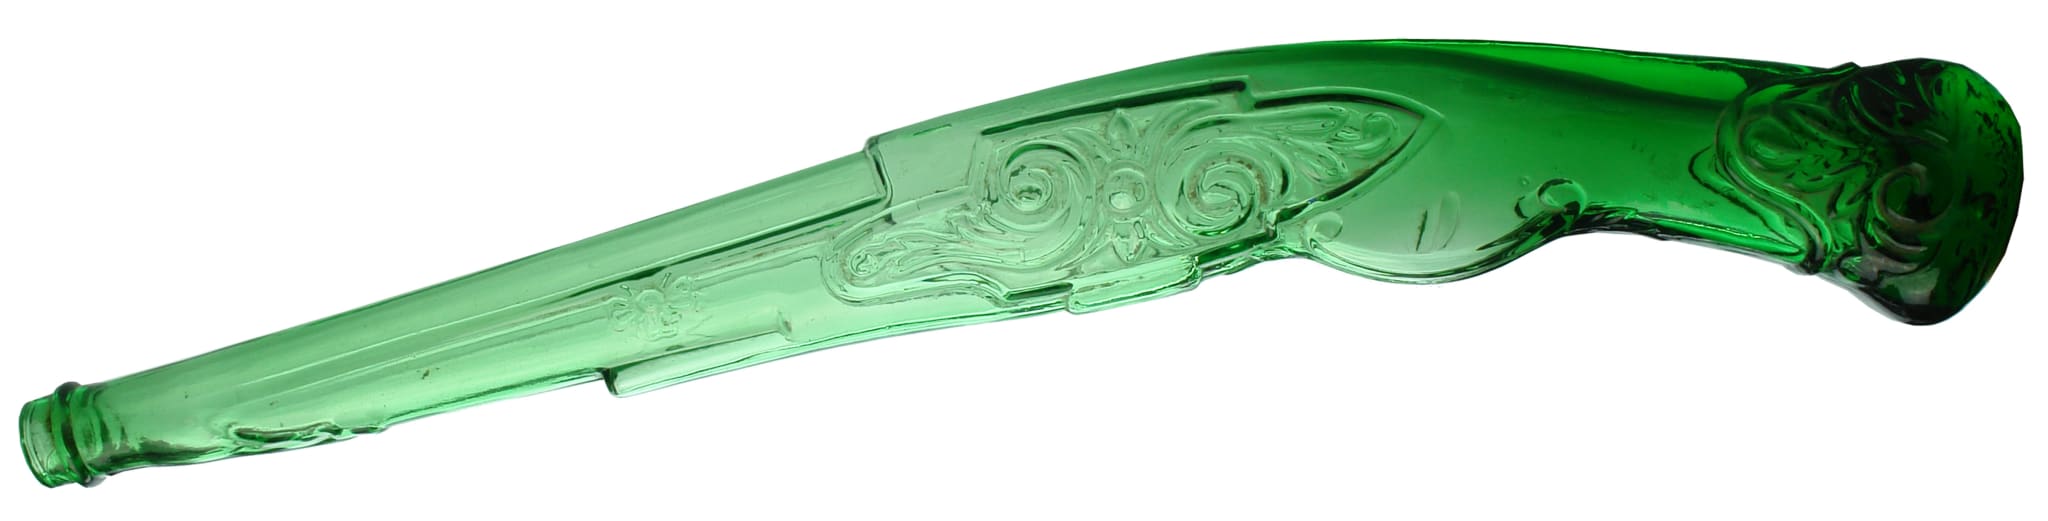 Frango's Bundaberg Rum Green Pistol Bottle